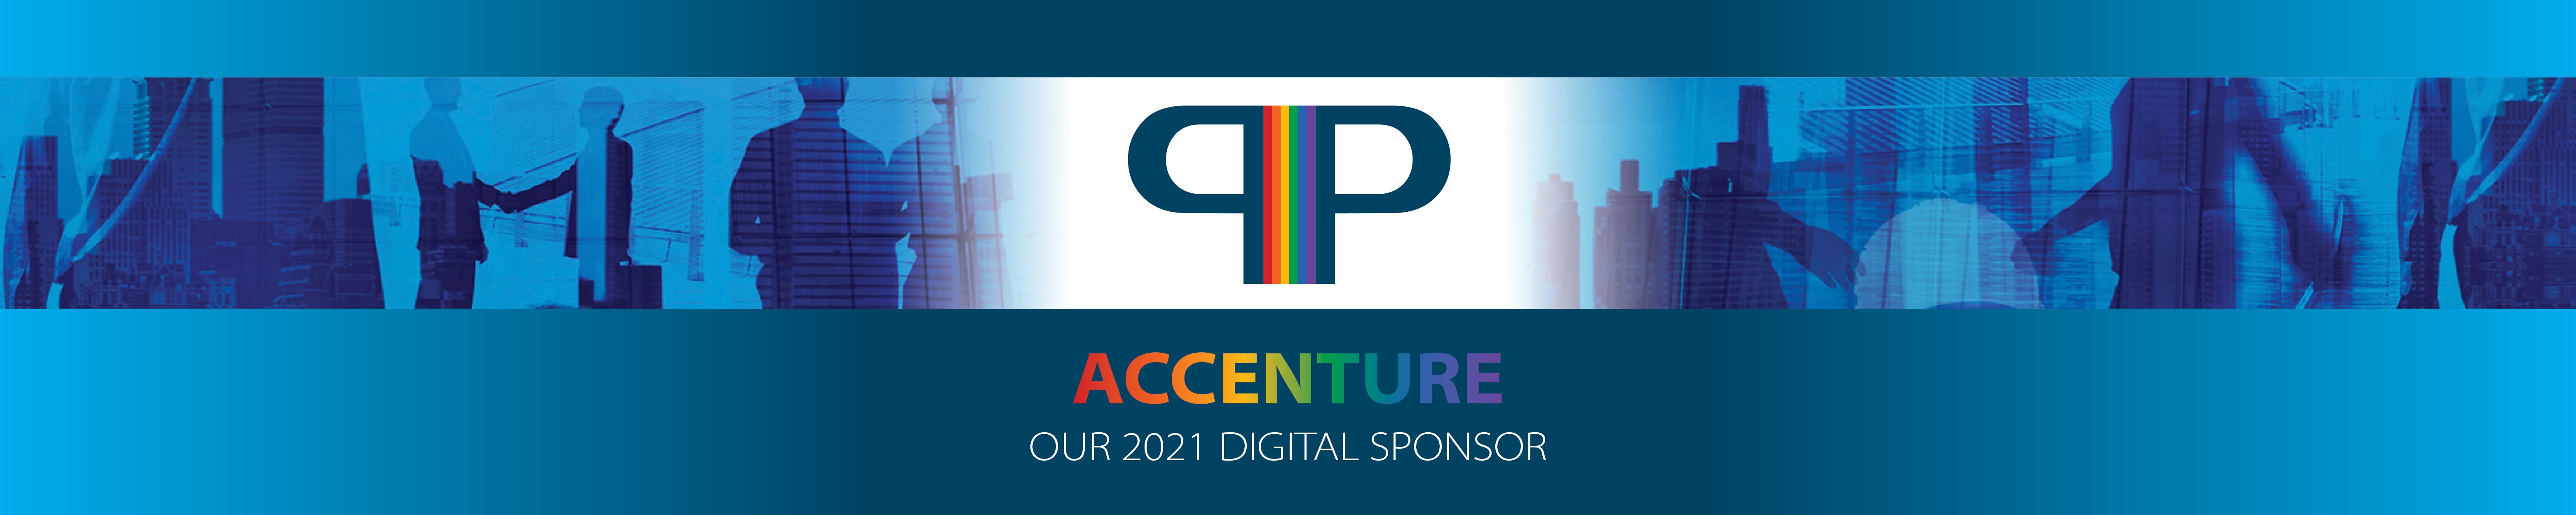 PIP_Sponsor_Accenture-1